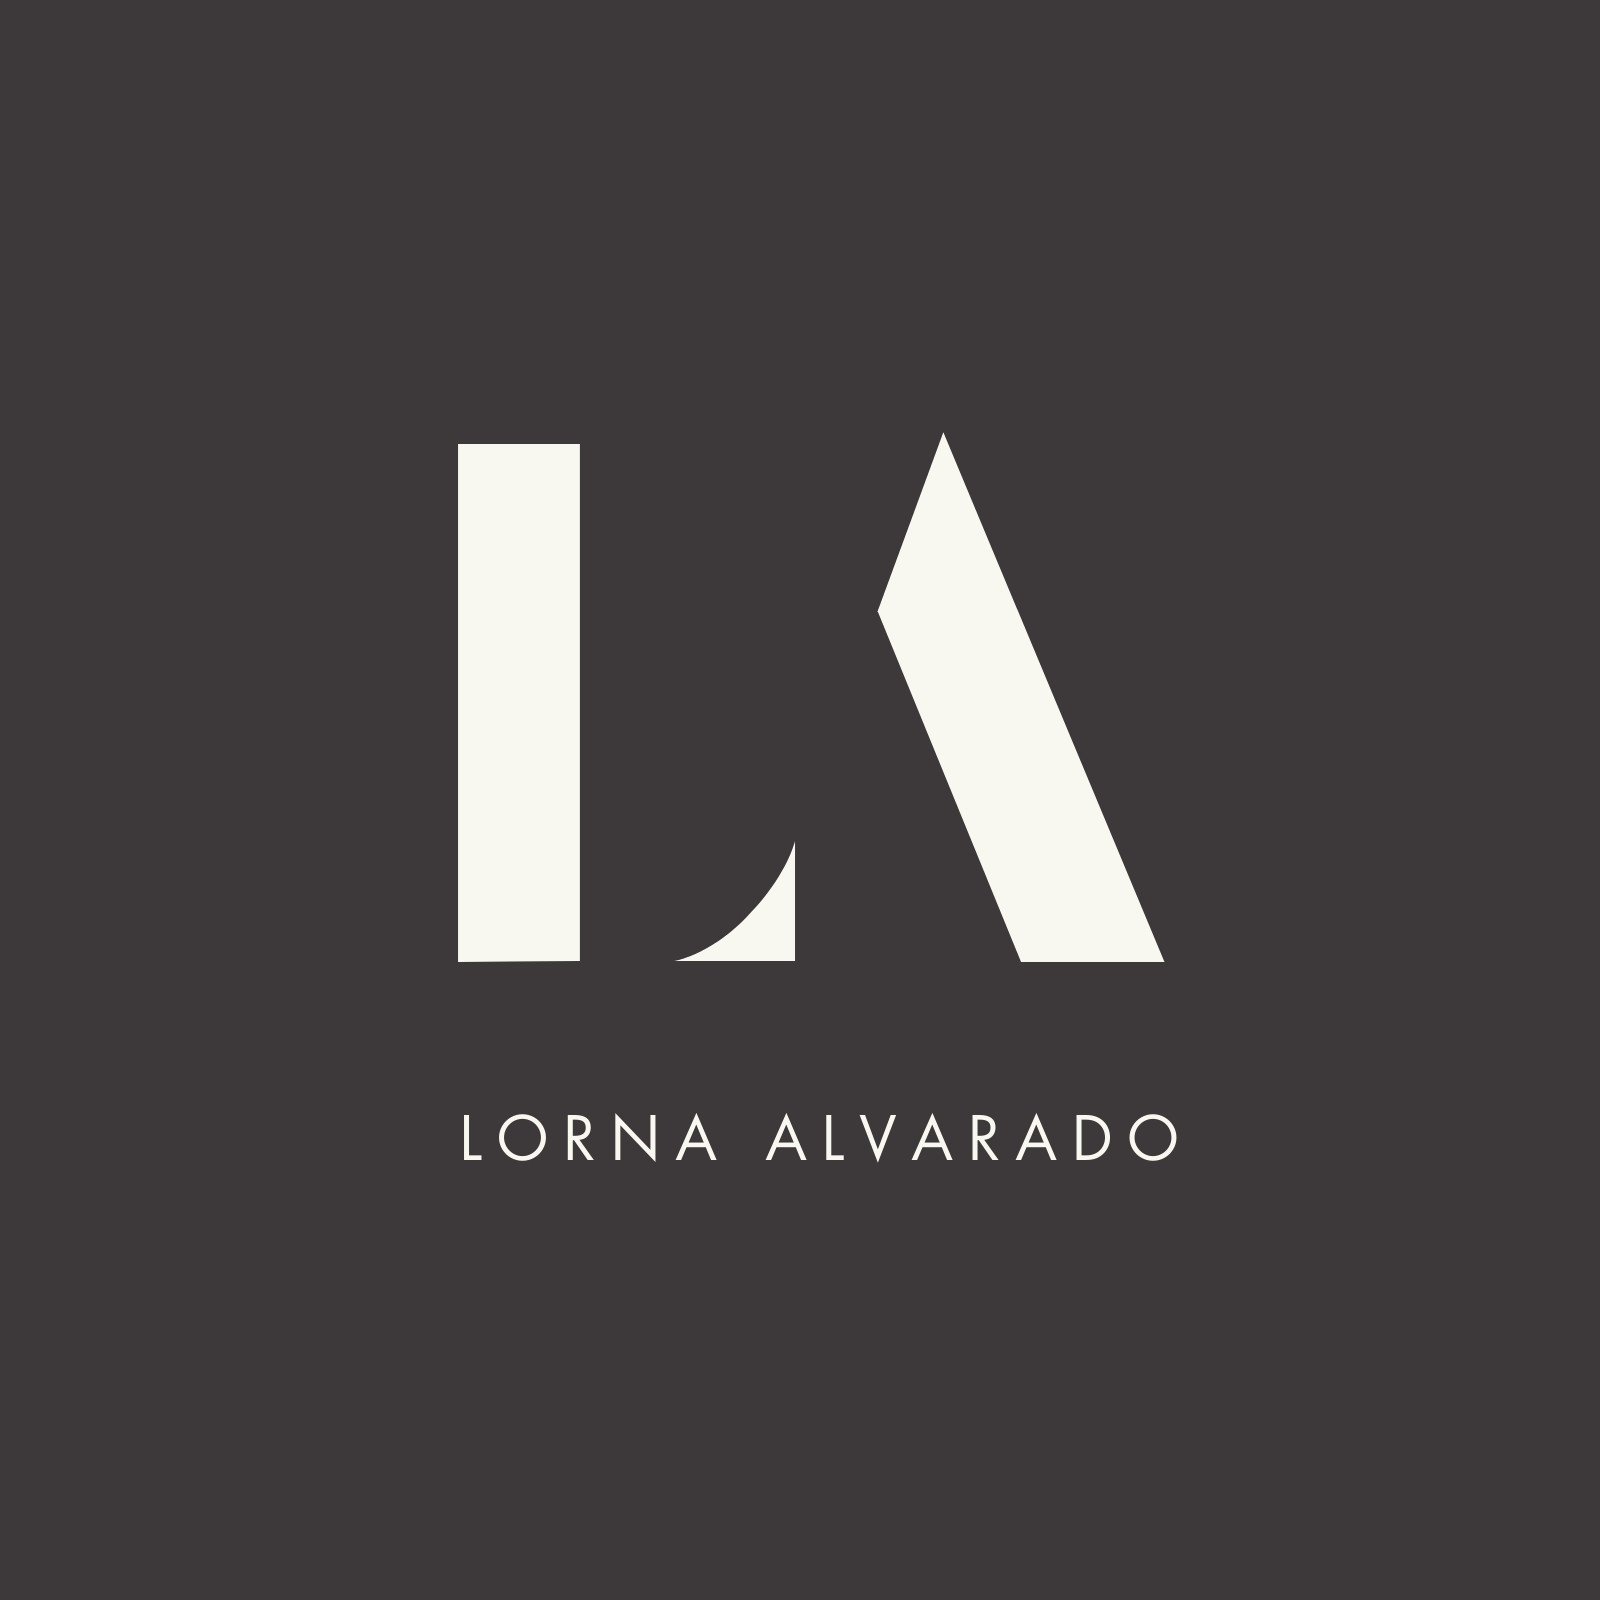 Letter Initial Monogram L A LA AL Logo Design Template. Suitable